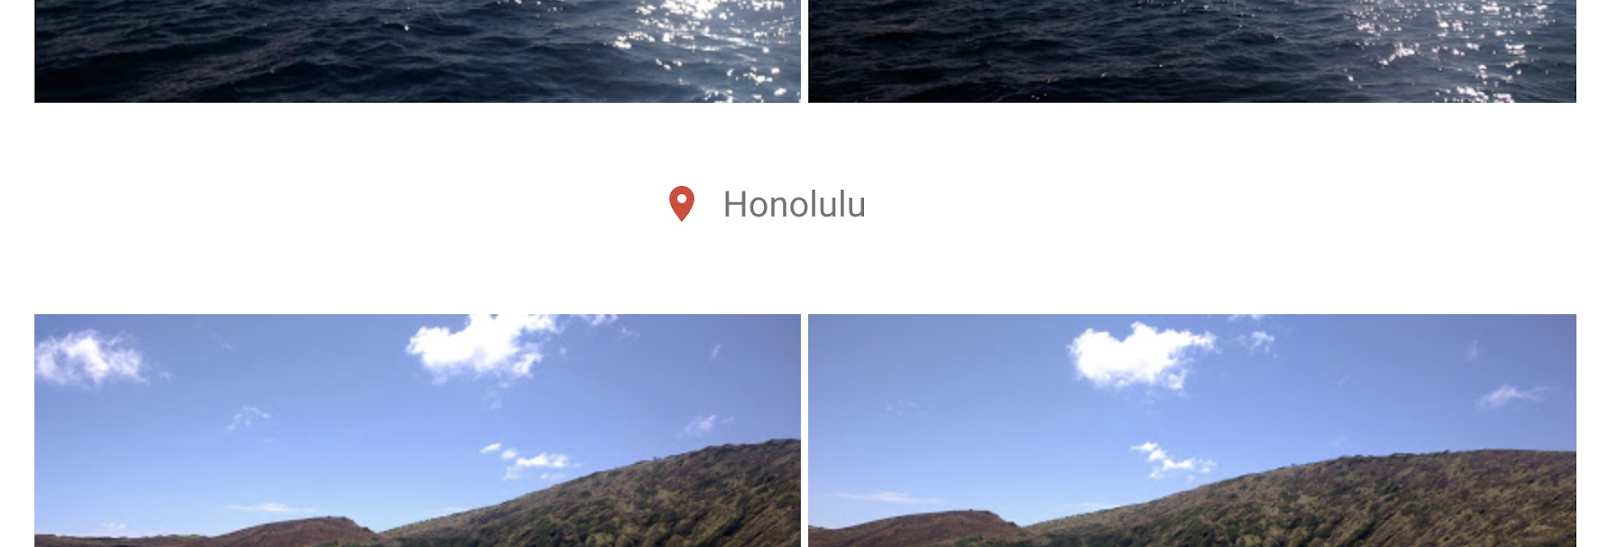 Zrzut ekranu ze wzbogaconymi informacjami o lokalizacji widoczny w Zdjęciach Google